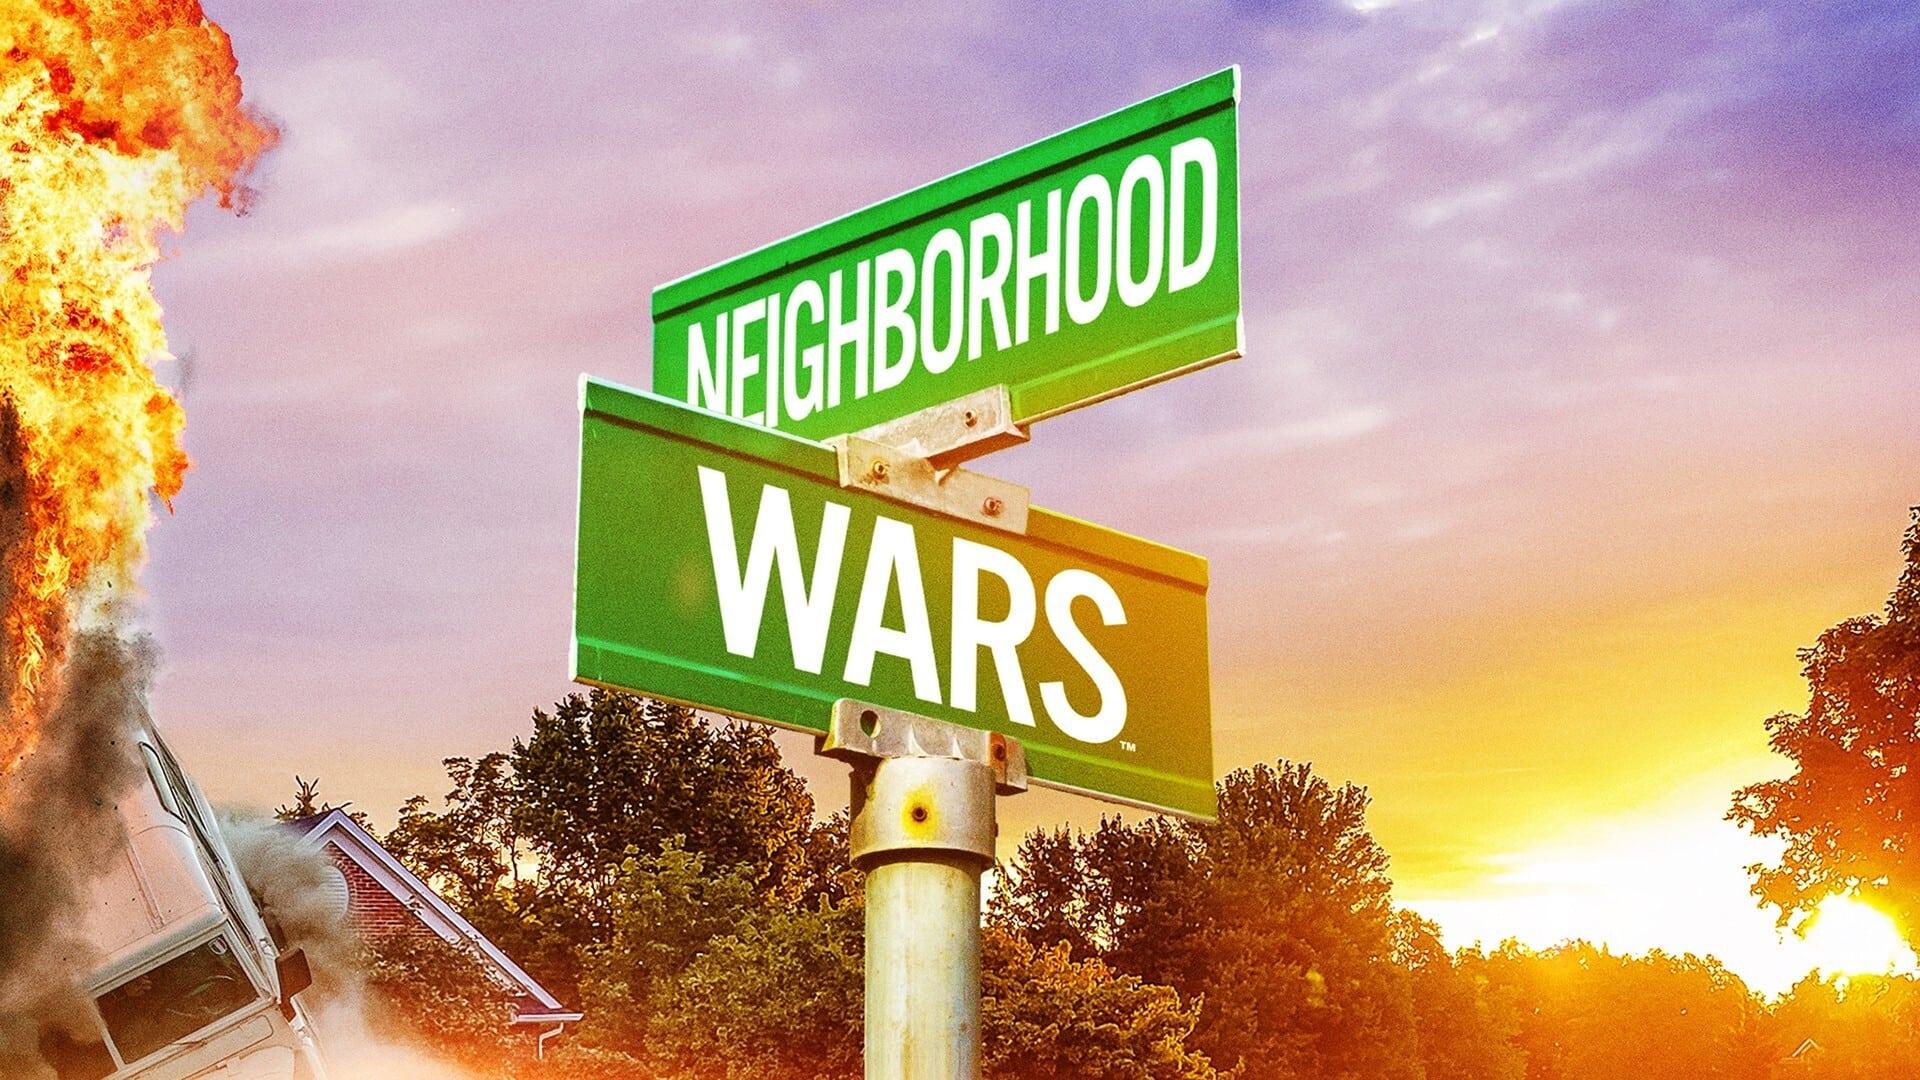 Neighborhood Wars backdrop